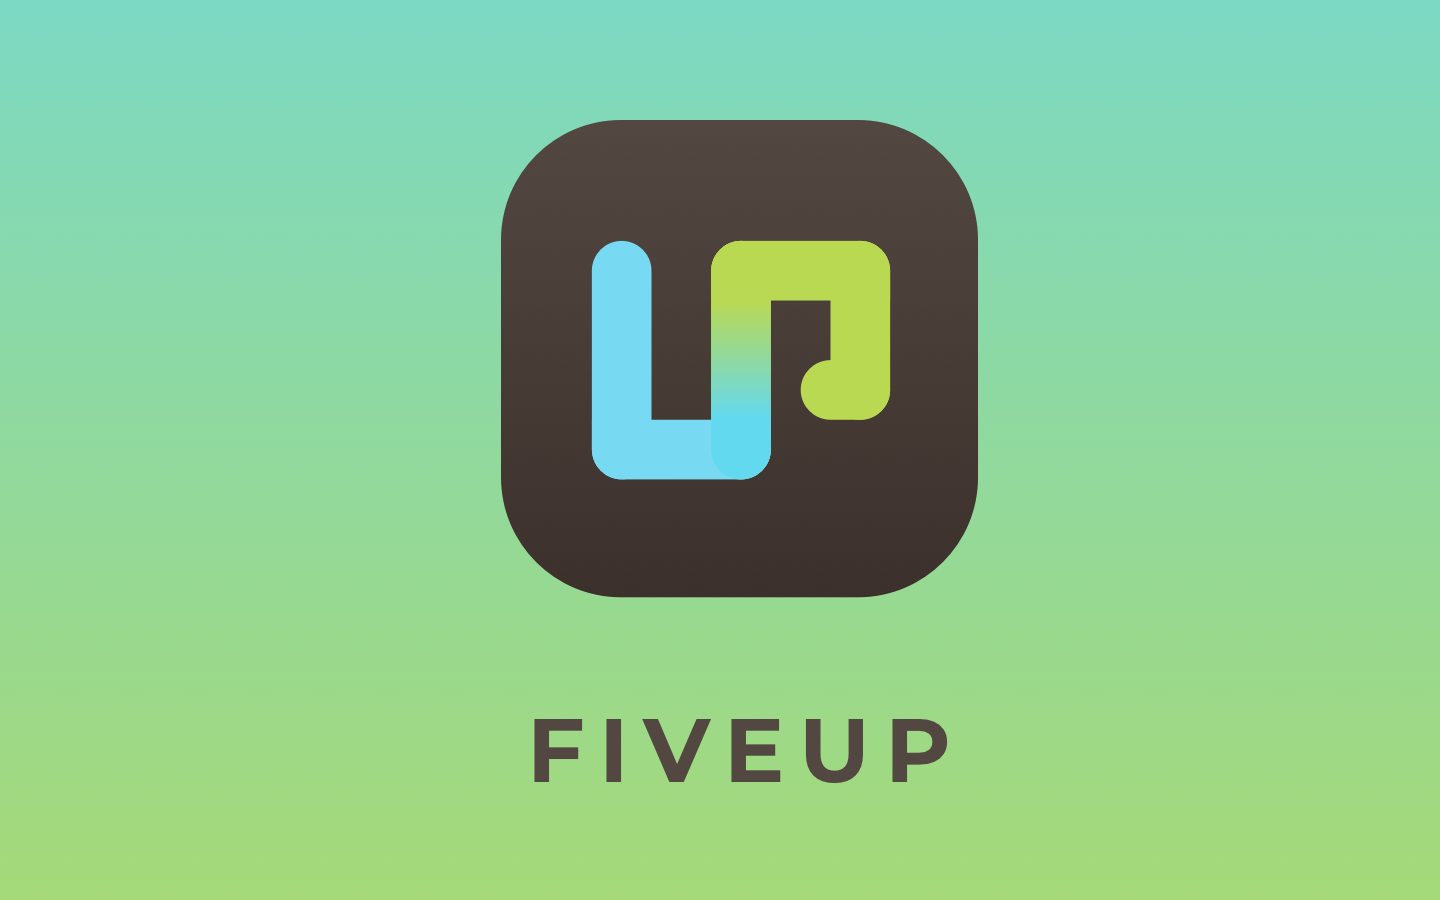 FiveUP alkalmazás továbbfejlesztése